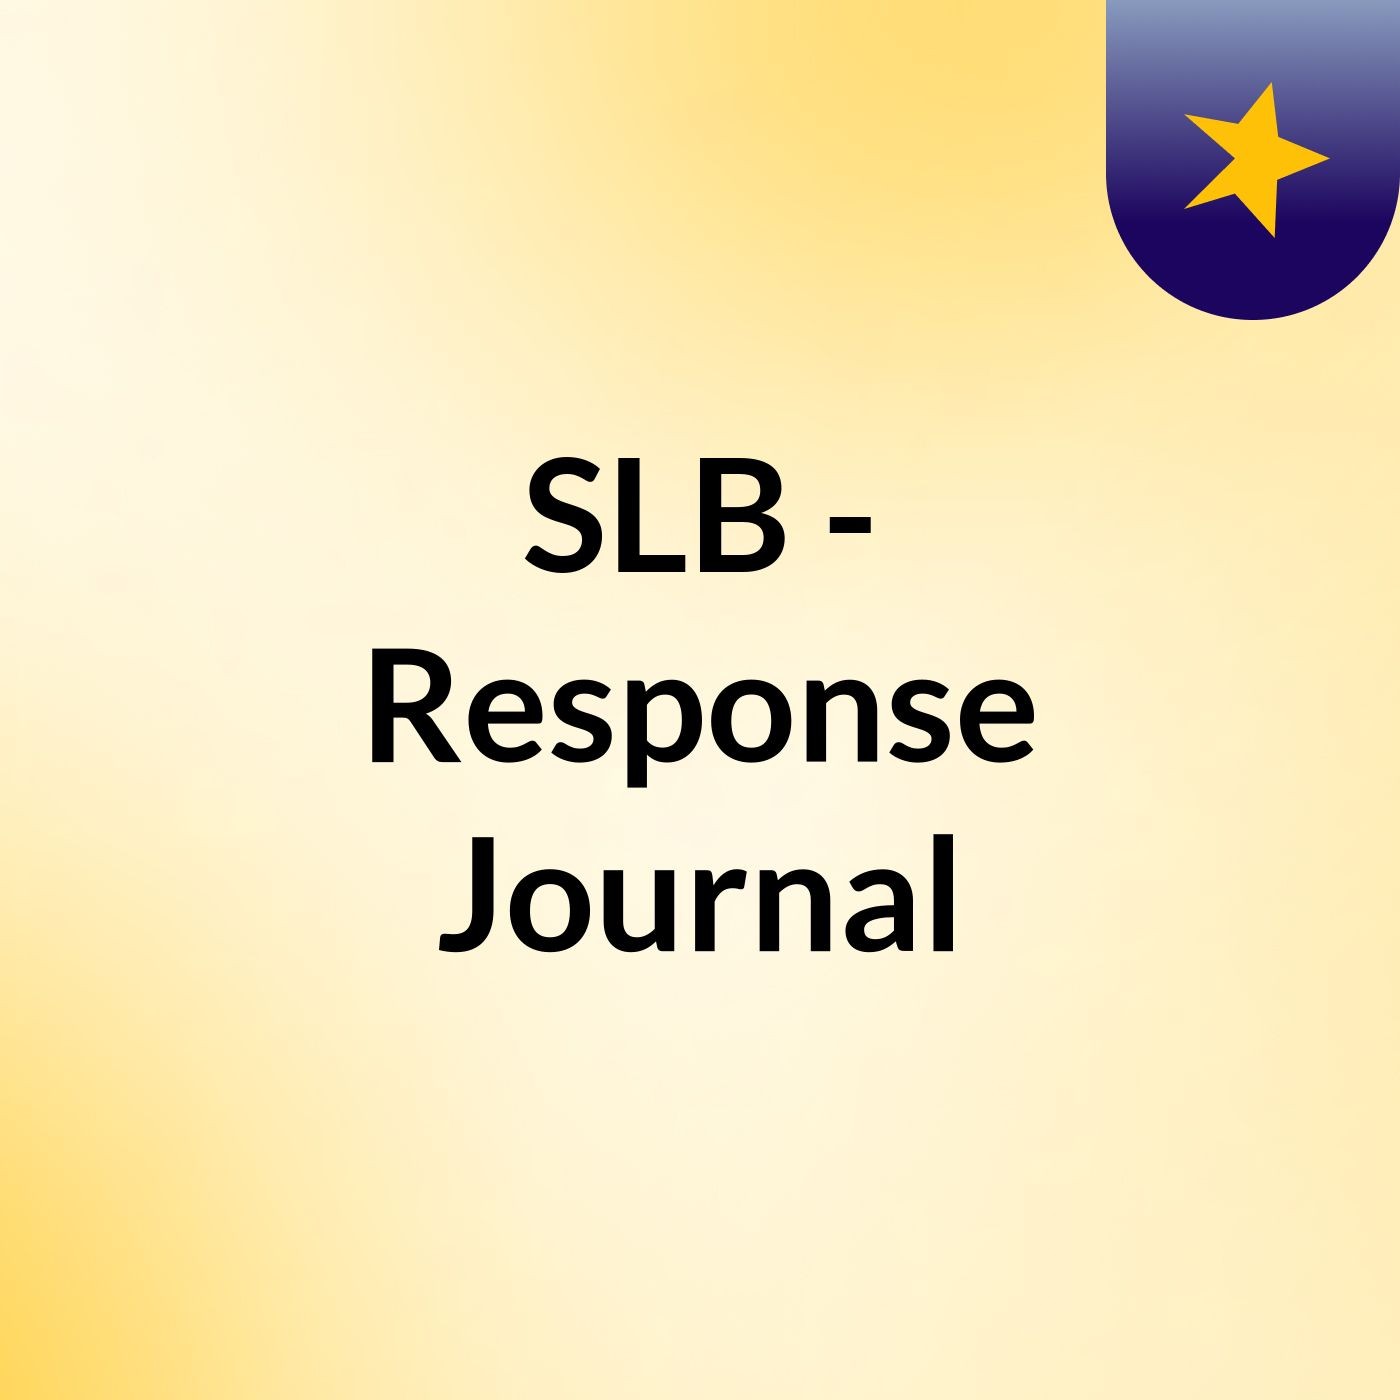 Episode 2 - SLB - Response Journal